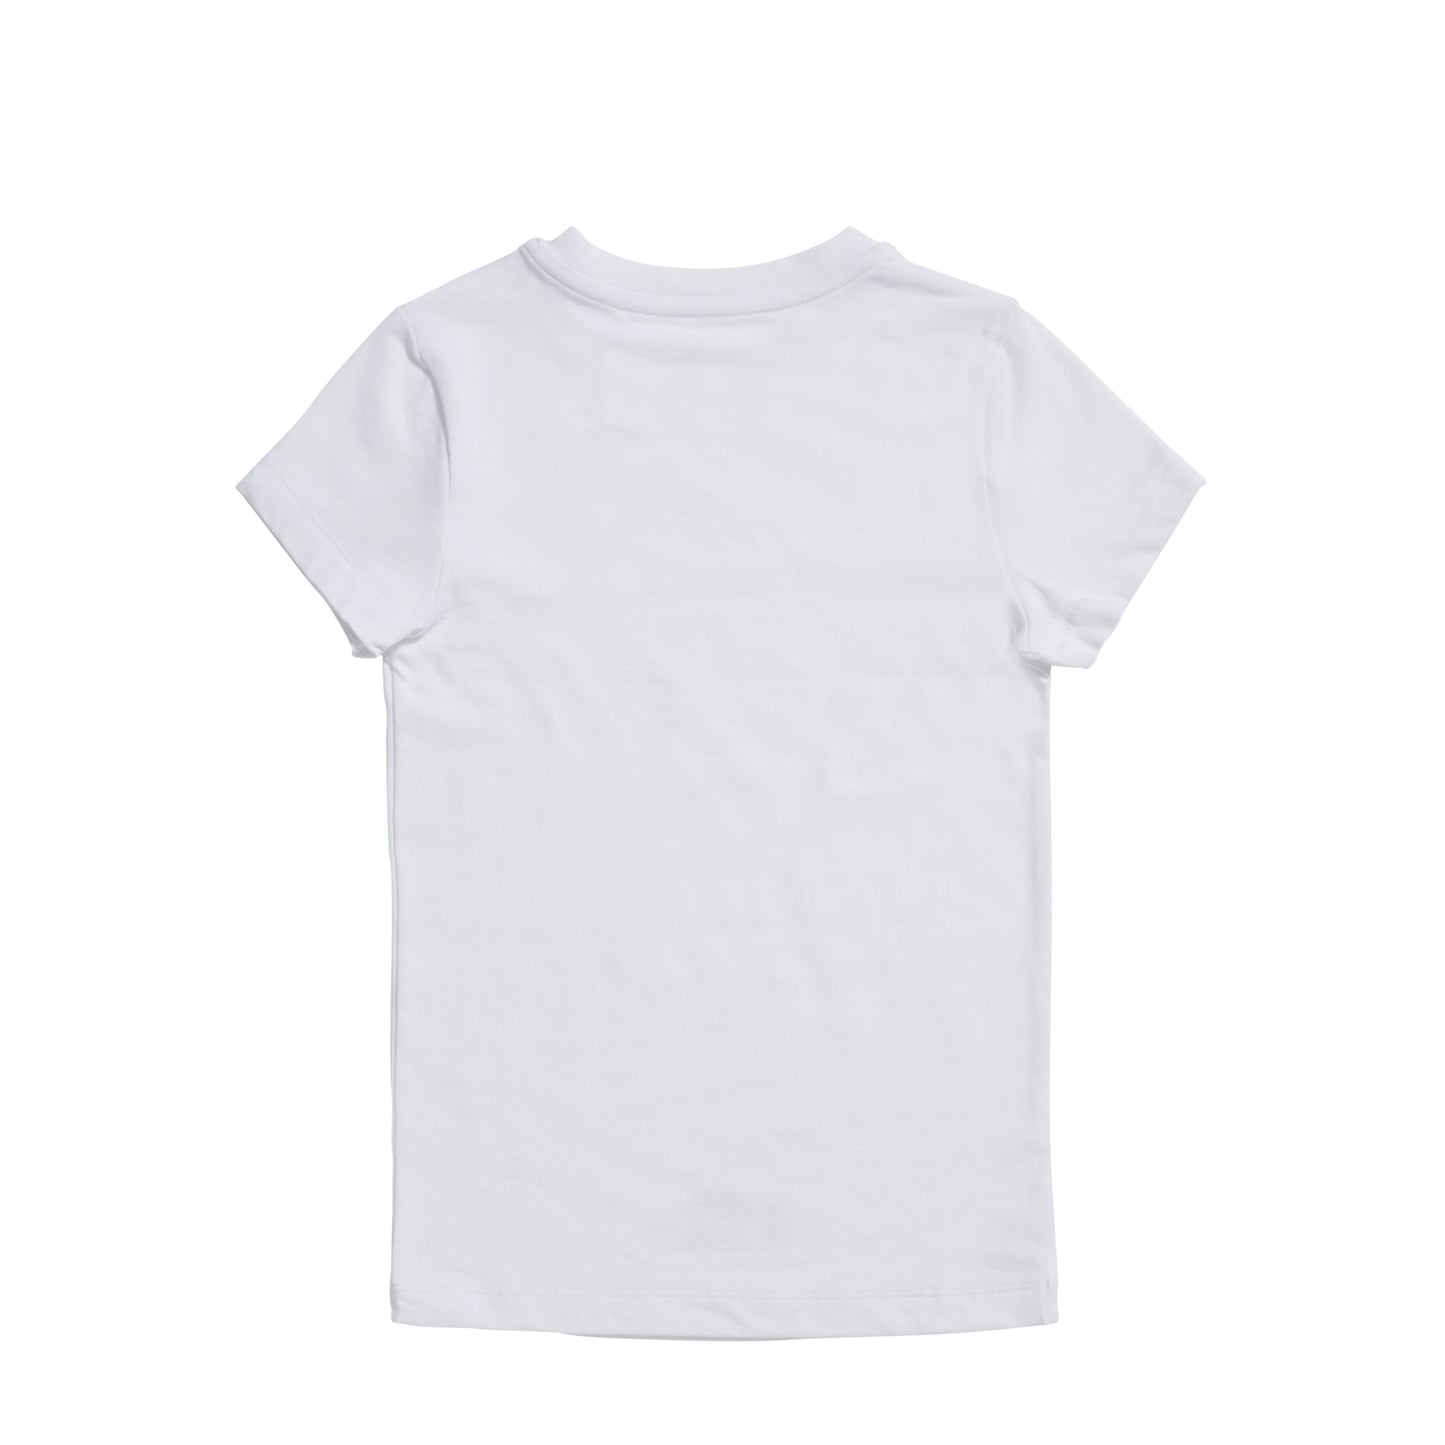 Boys basic t-shirt 30044 001 white